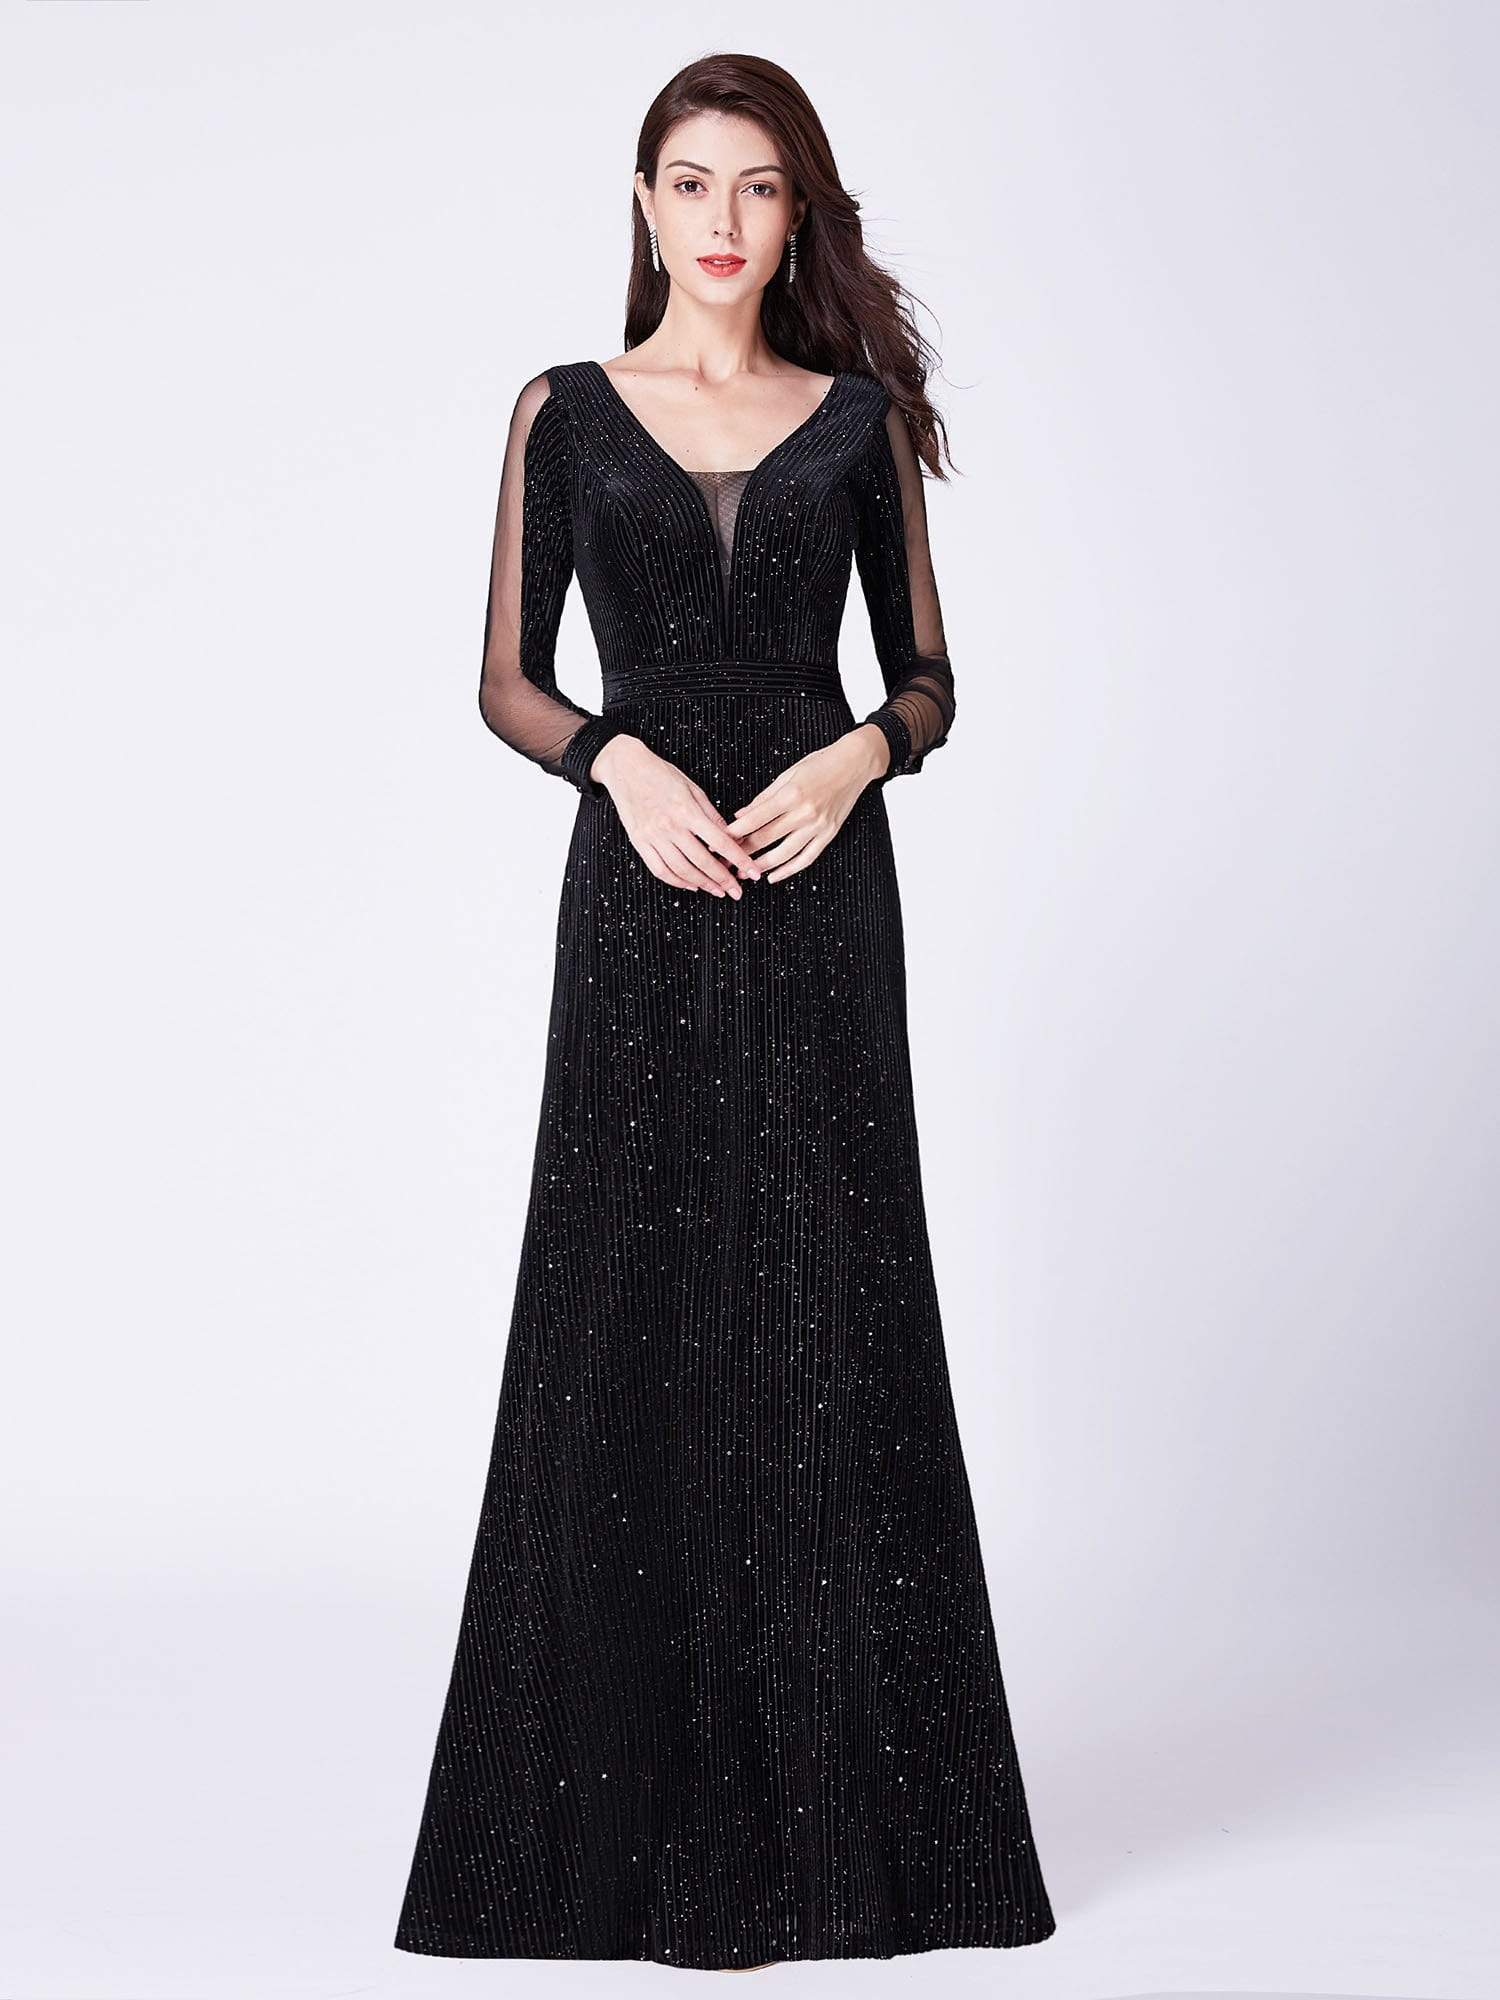 Shimmery Velvet Evening Dresses for Women with Long Sleeves